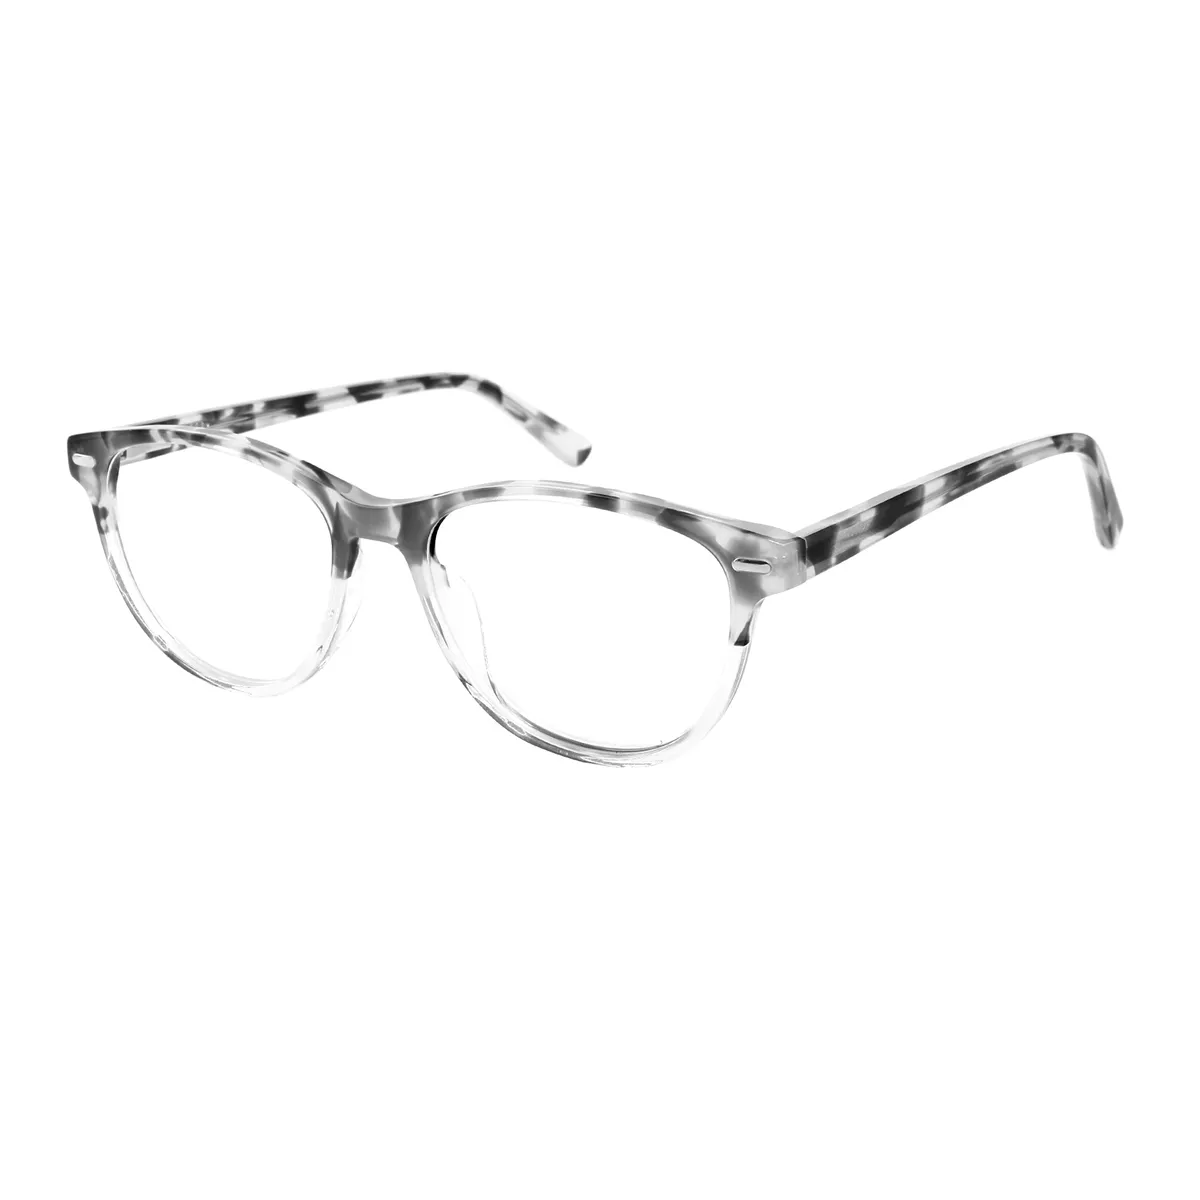 Agricola - Oval Gray-Tortoiseshell Glasses for Women